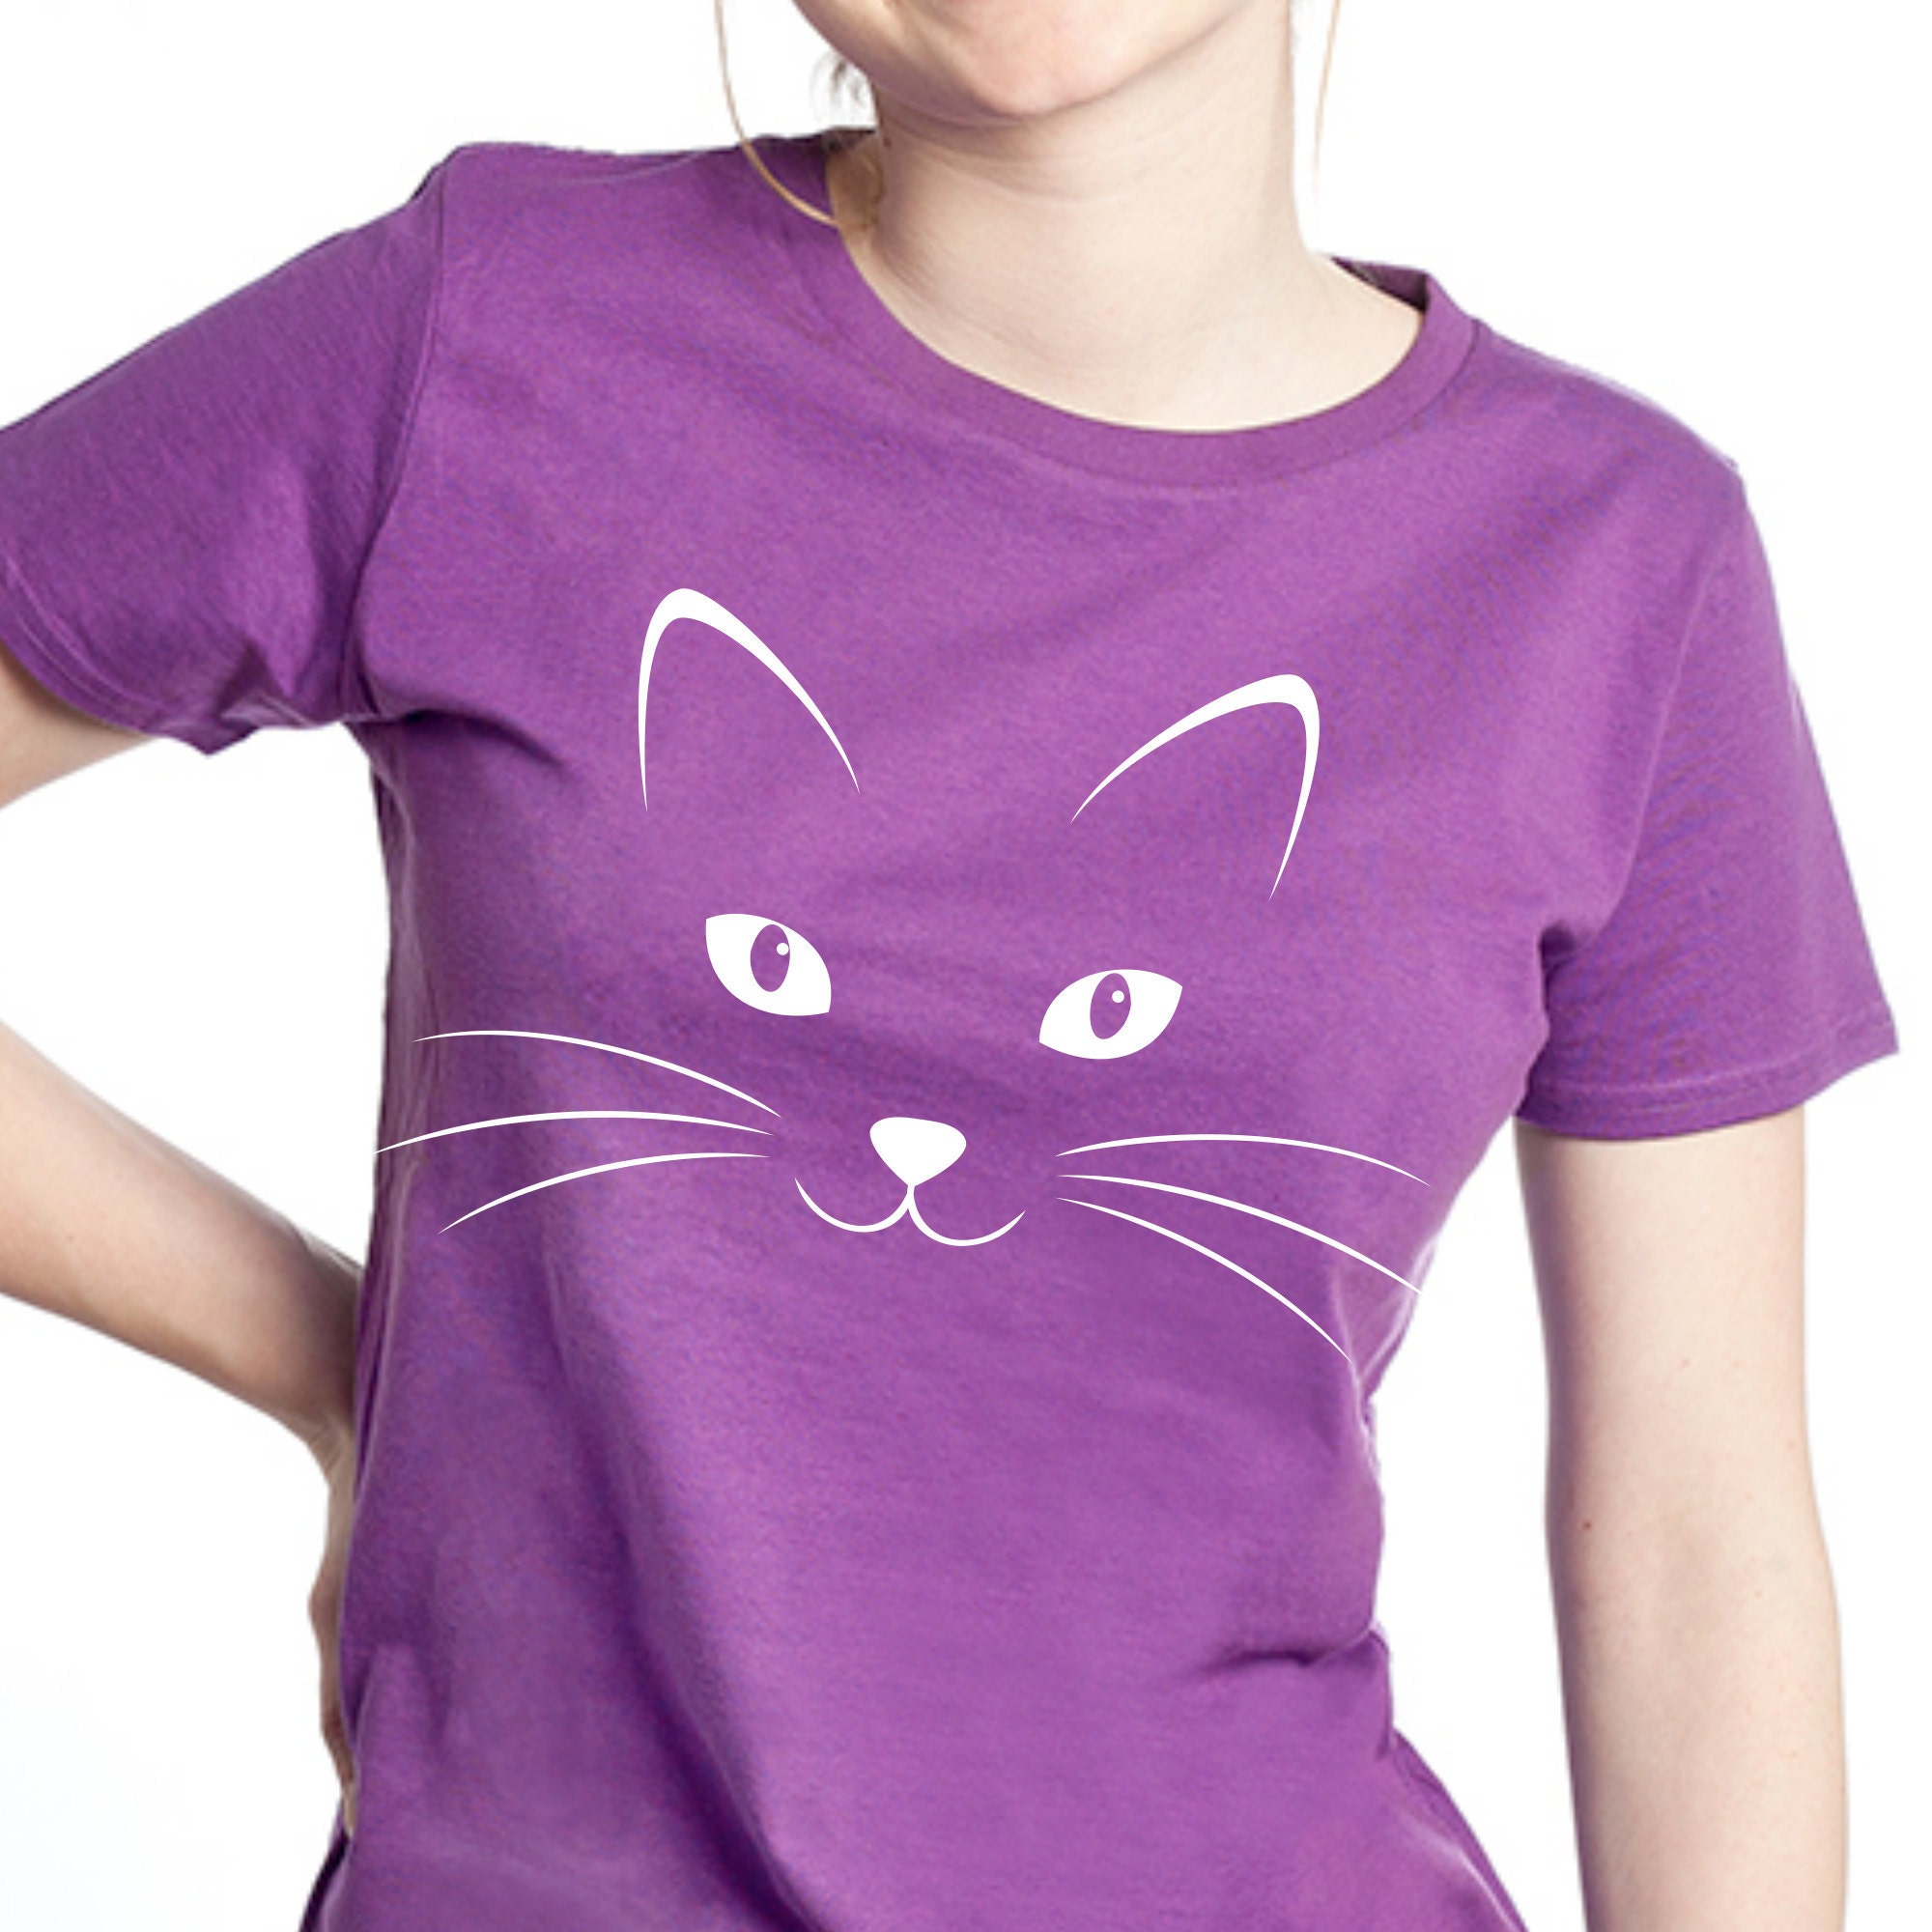 Cat face shirt